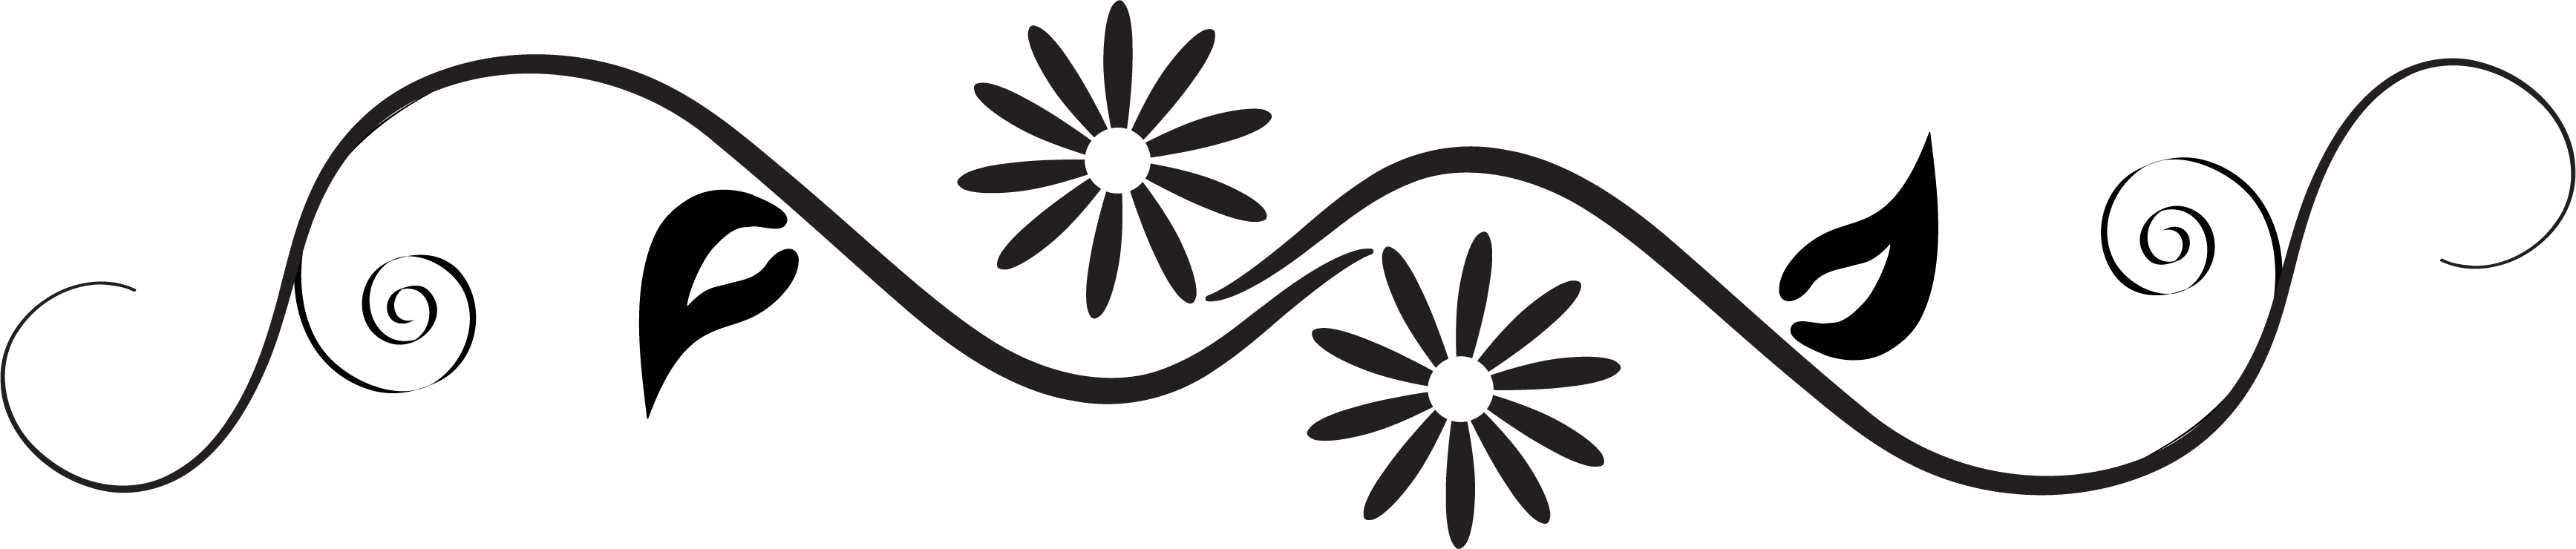 花のイラスト フリー素材 白黒 モノクロno 326 白黒 S字 横長